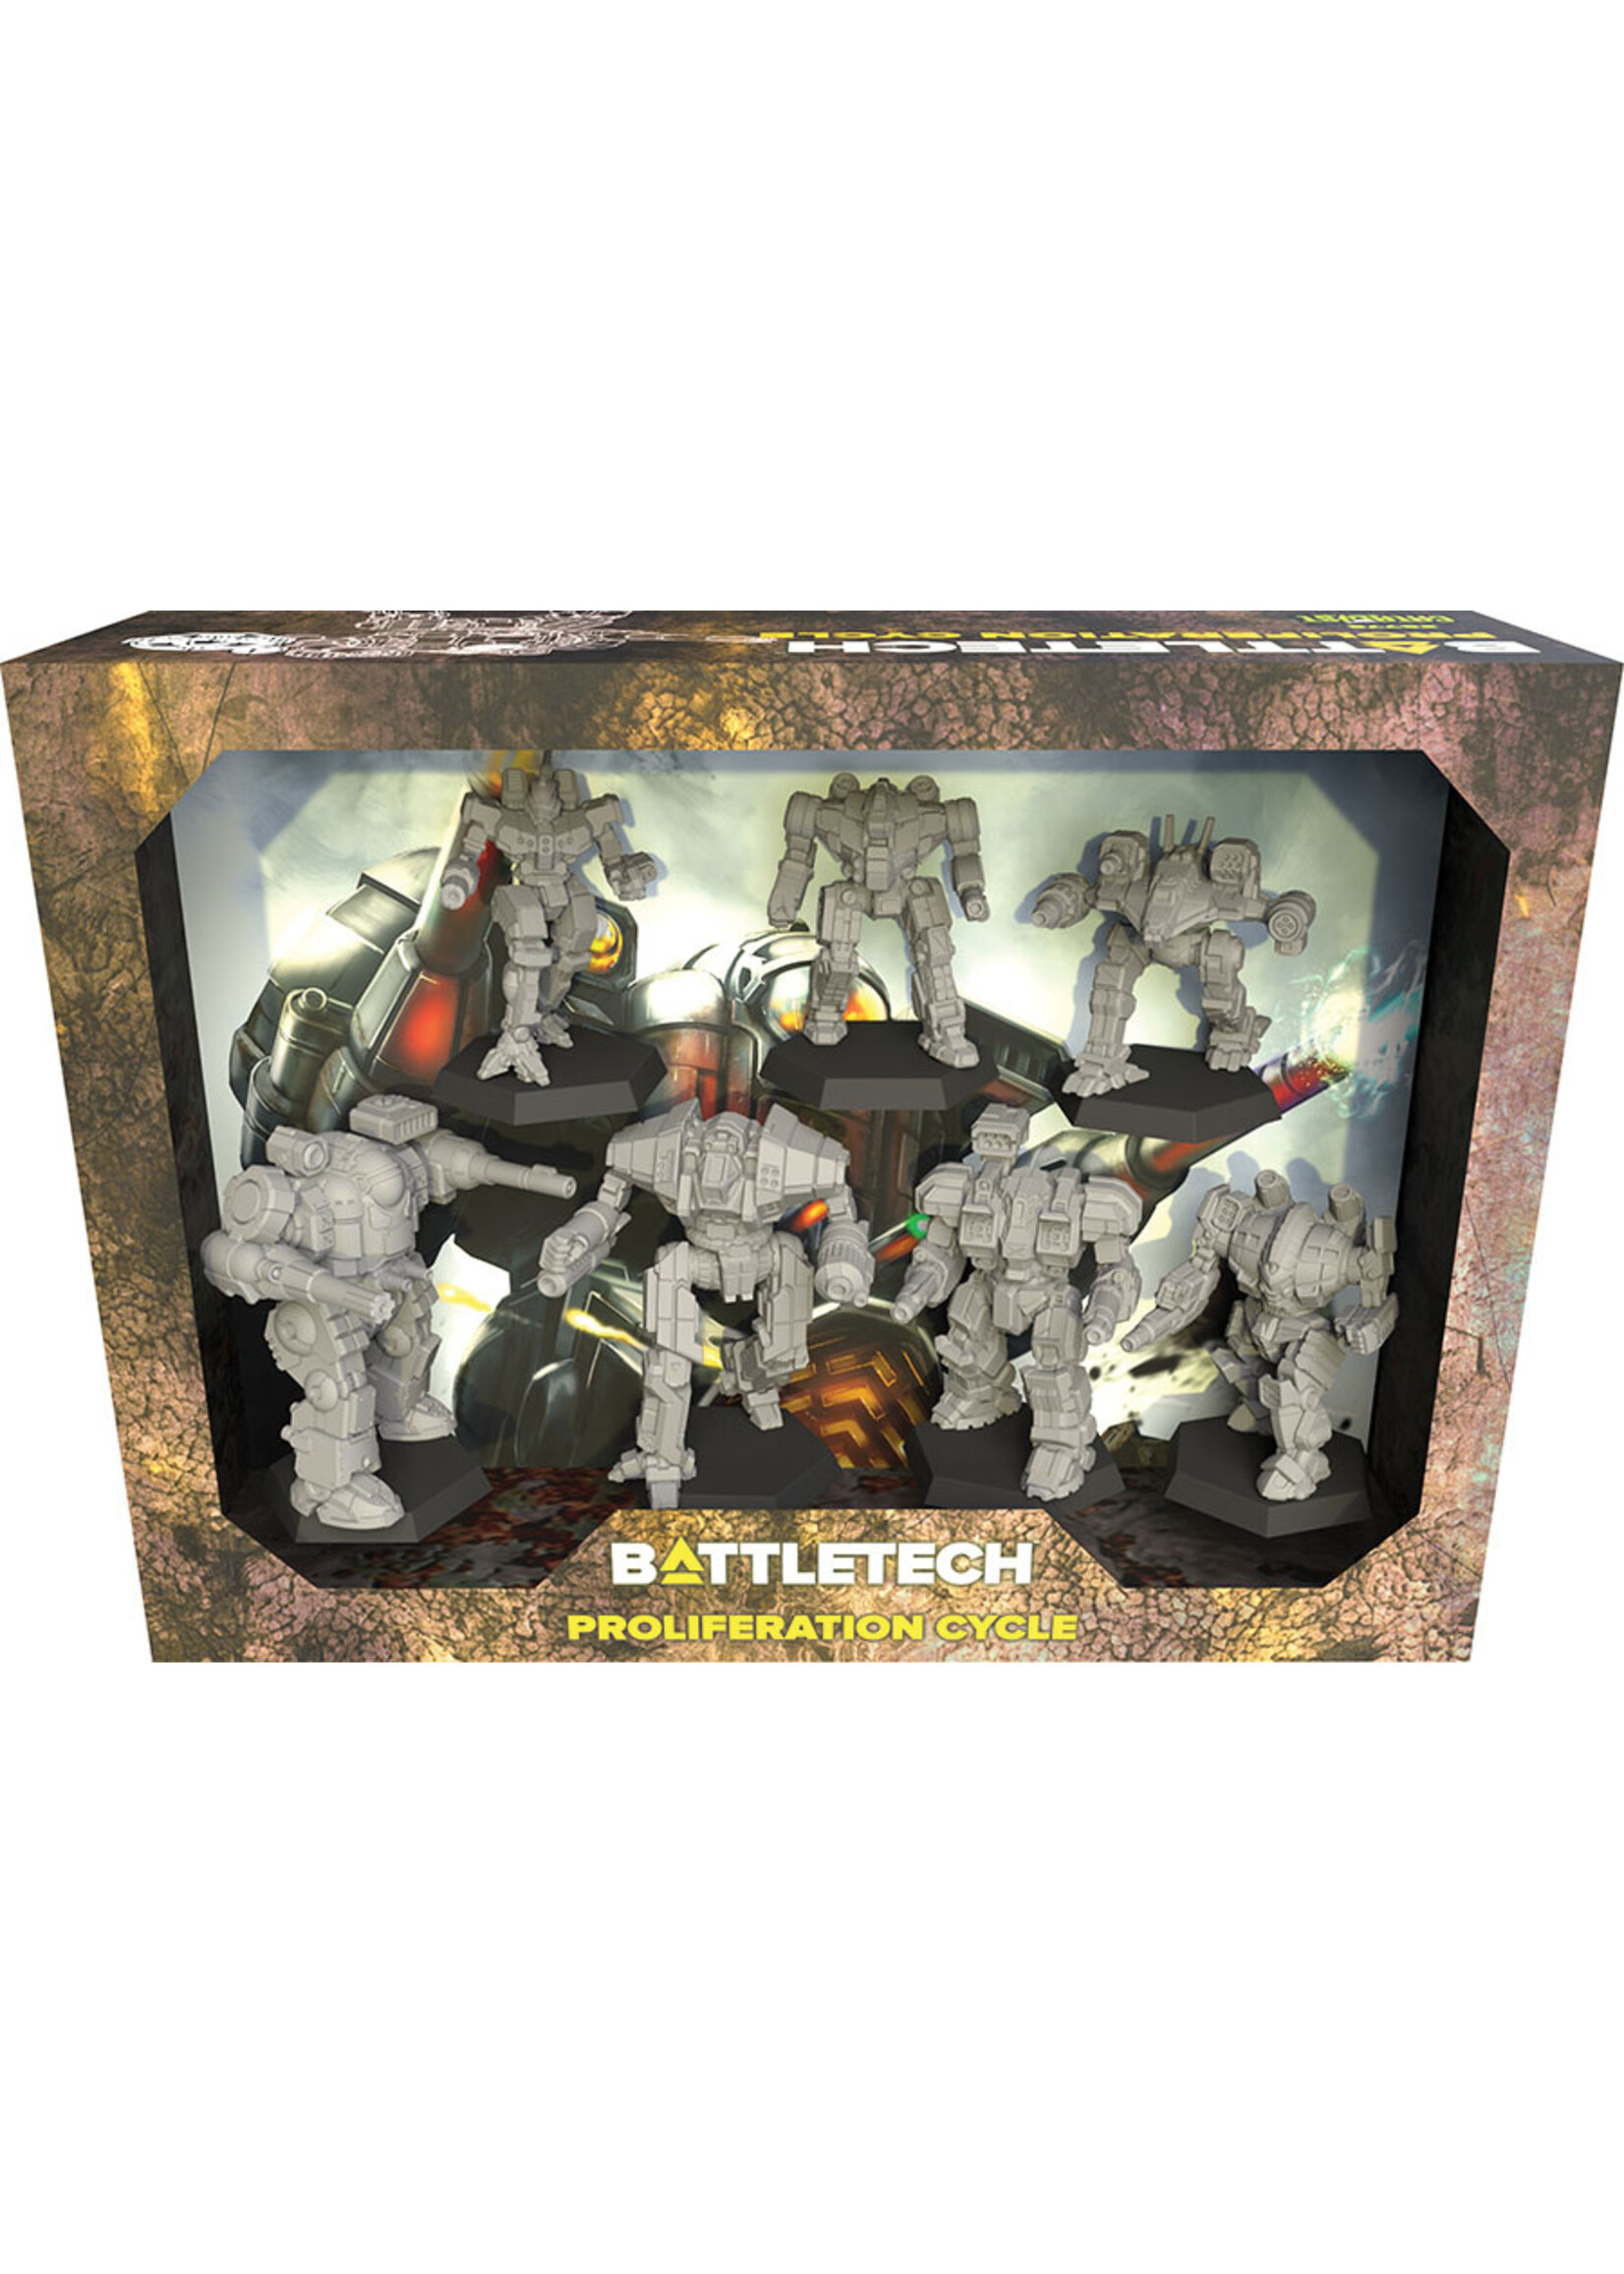 Battletech Battletech: Miniature Force Pack Proliferation Cycle Boxed Set